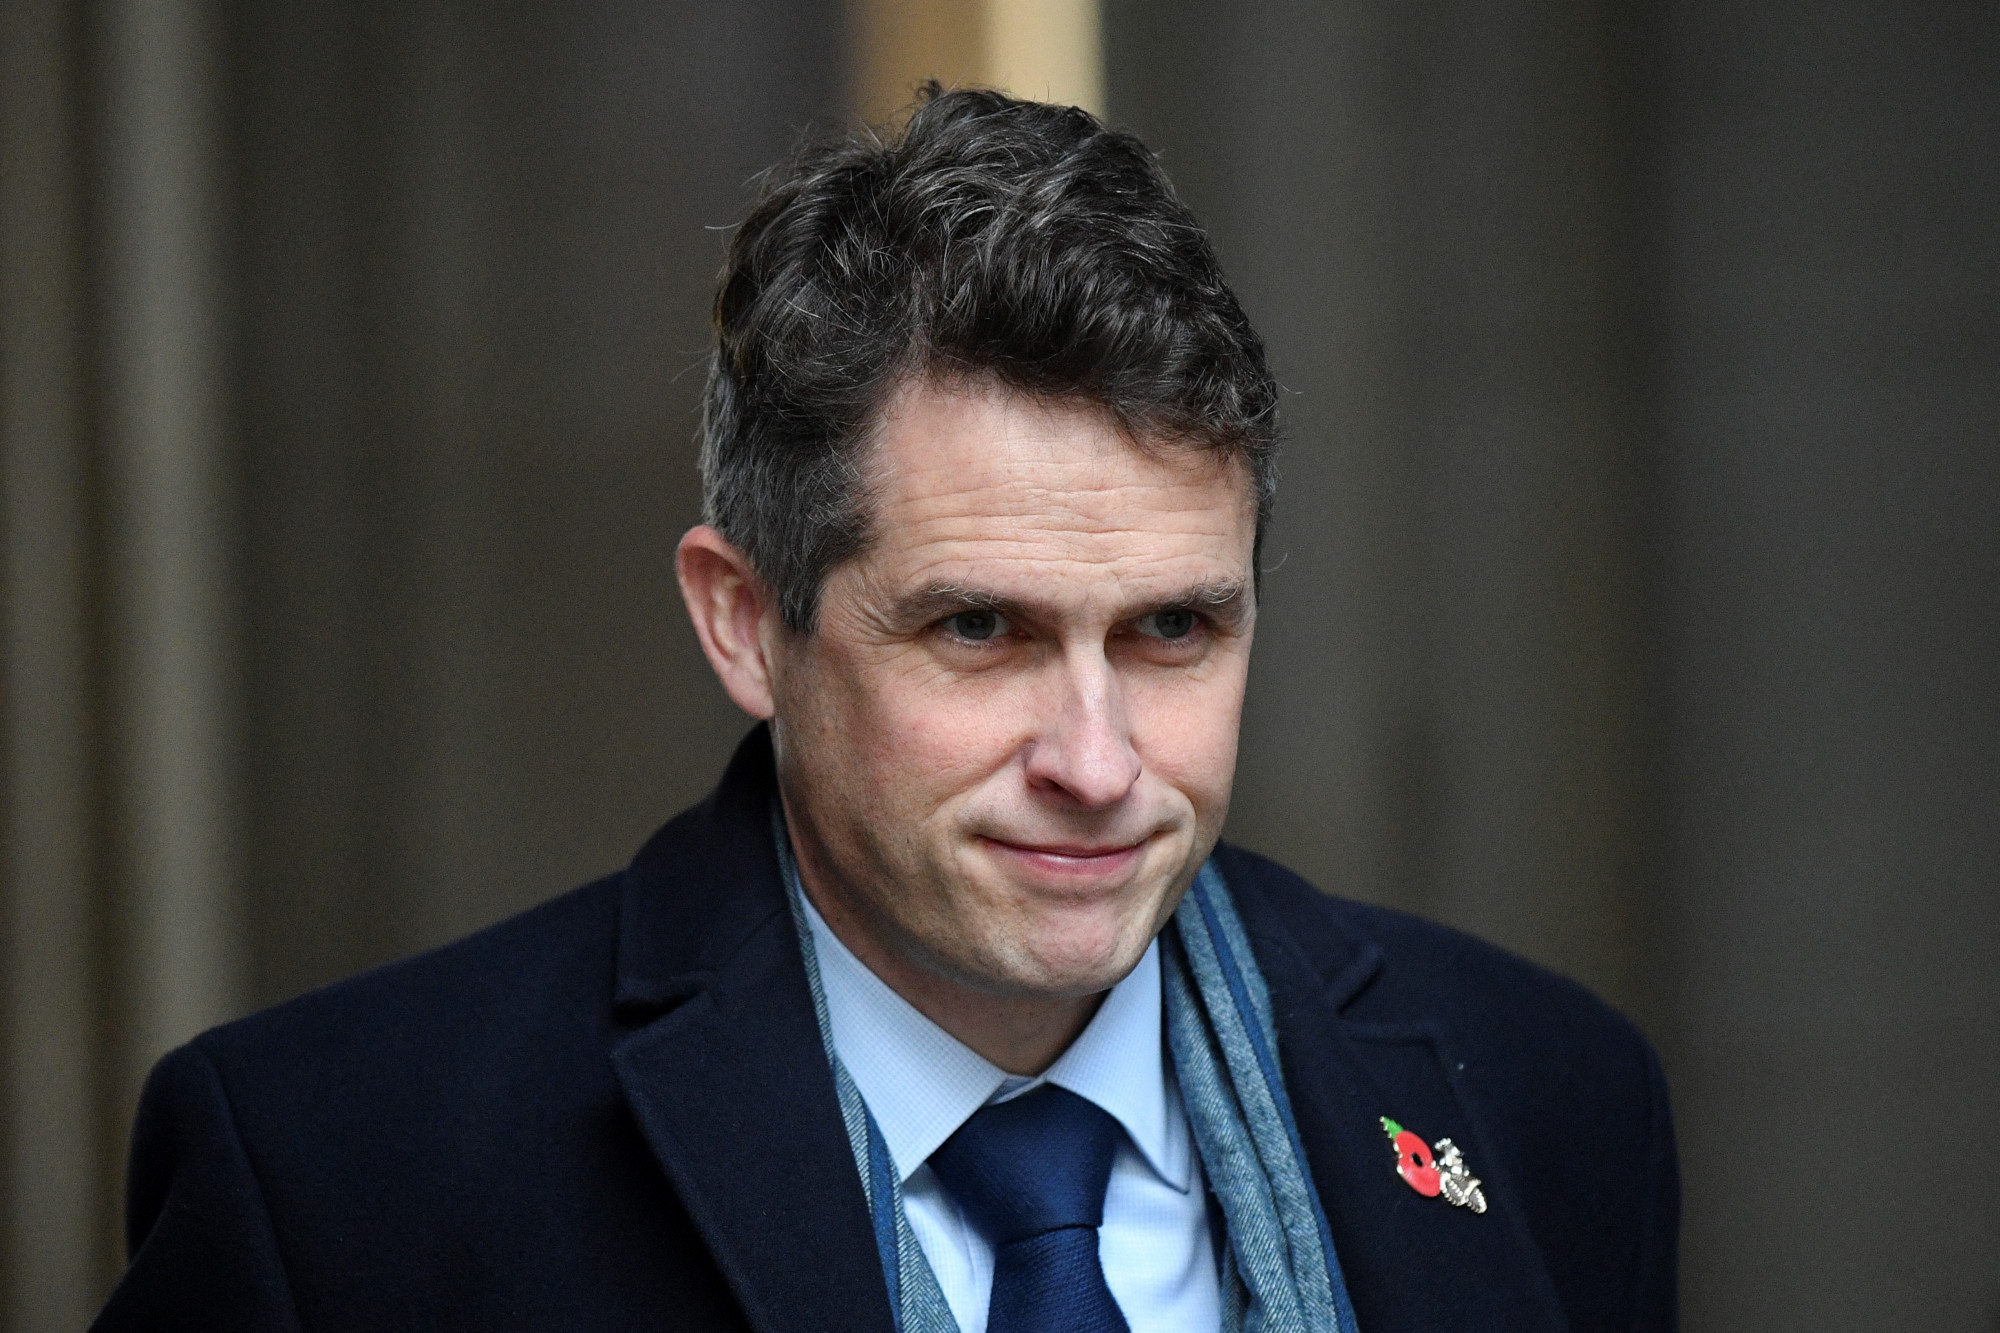 Két hét után lemondott egy brit miniszter, aki azt mondta egy kollégájának, vágja el a torkát